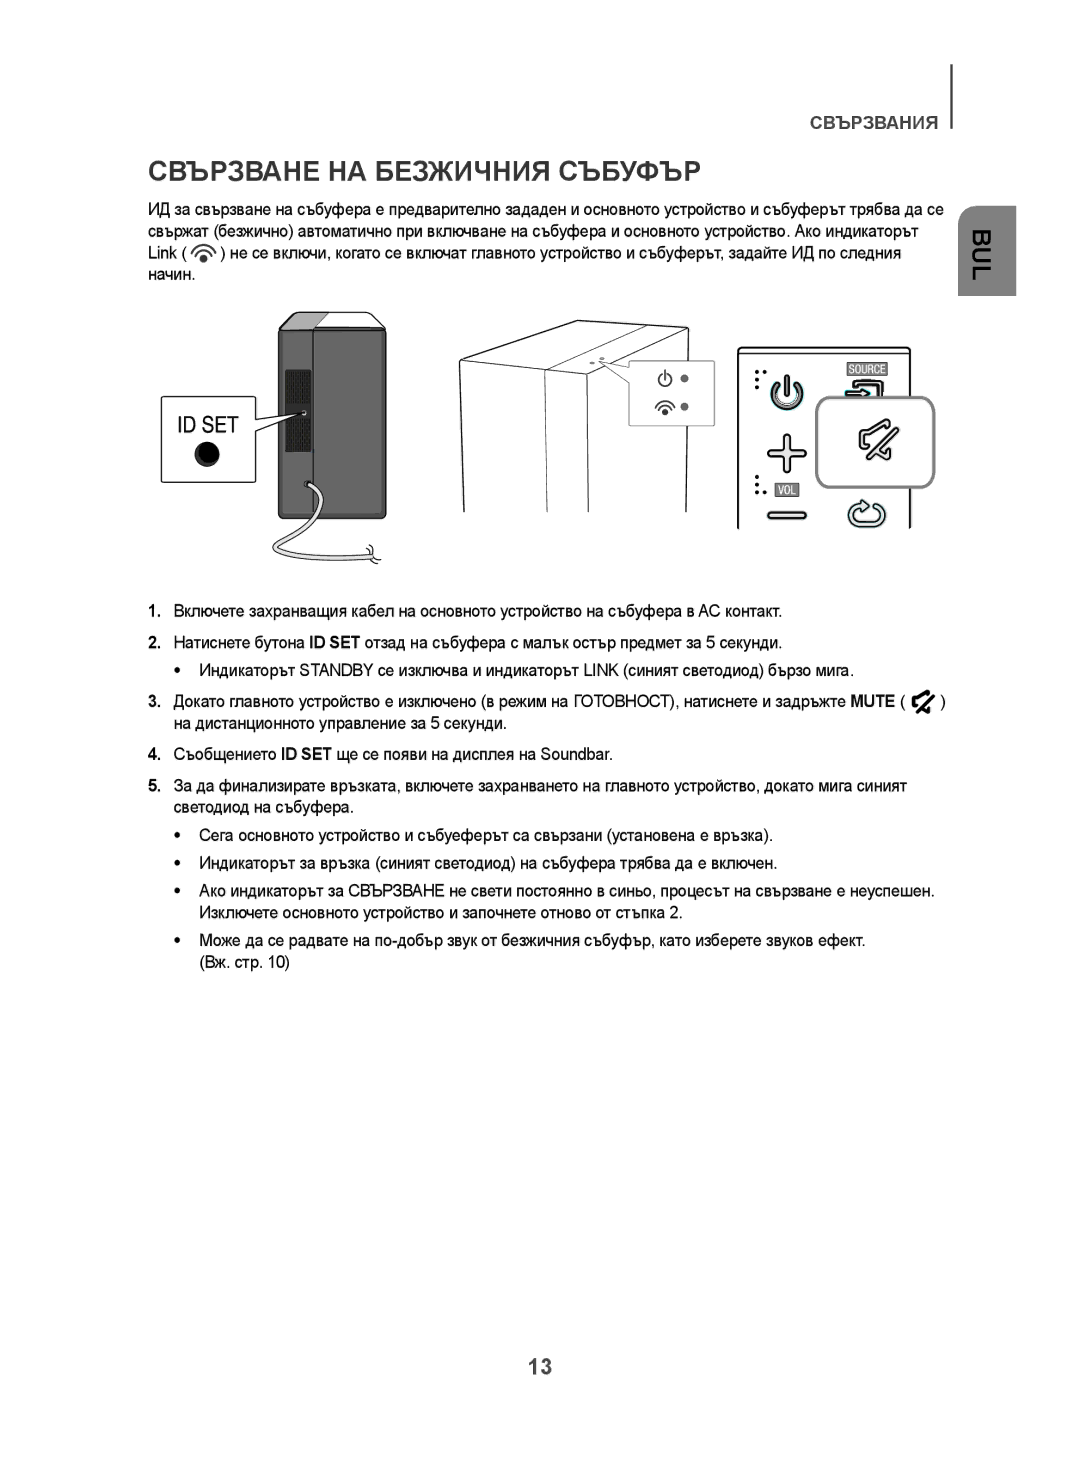 Samsung HW-H450/XN, HW-H450/TK, HW-H450/EN, HW-H450/ZF, HW-H450/XE manual Свързване НА Безжичния Събуфър 